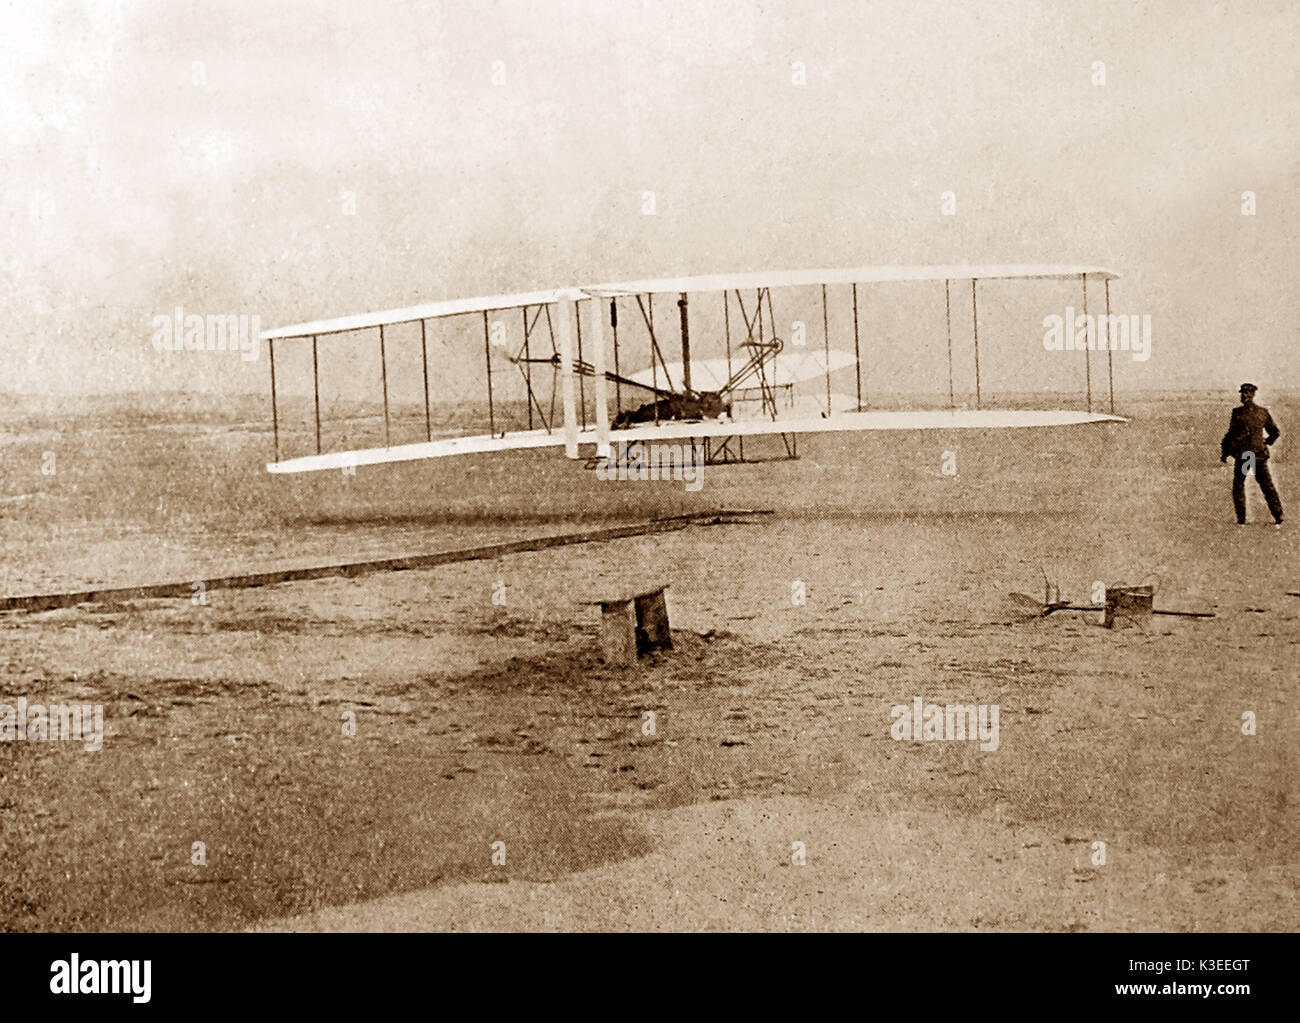 Der erste Flug der Gebrüder Wright in Kitty Hawk, North Carolina am 17. Dezember 1903. Wilbur beobachten Orville Pilotierung der Ebene. Stockfoto